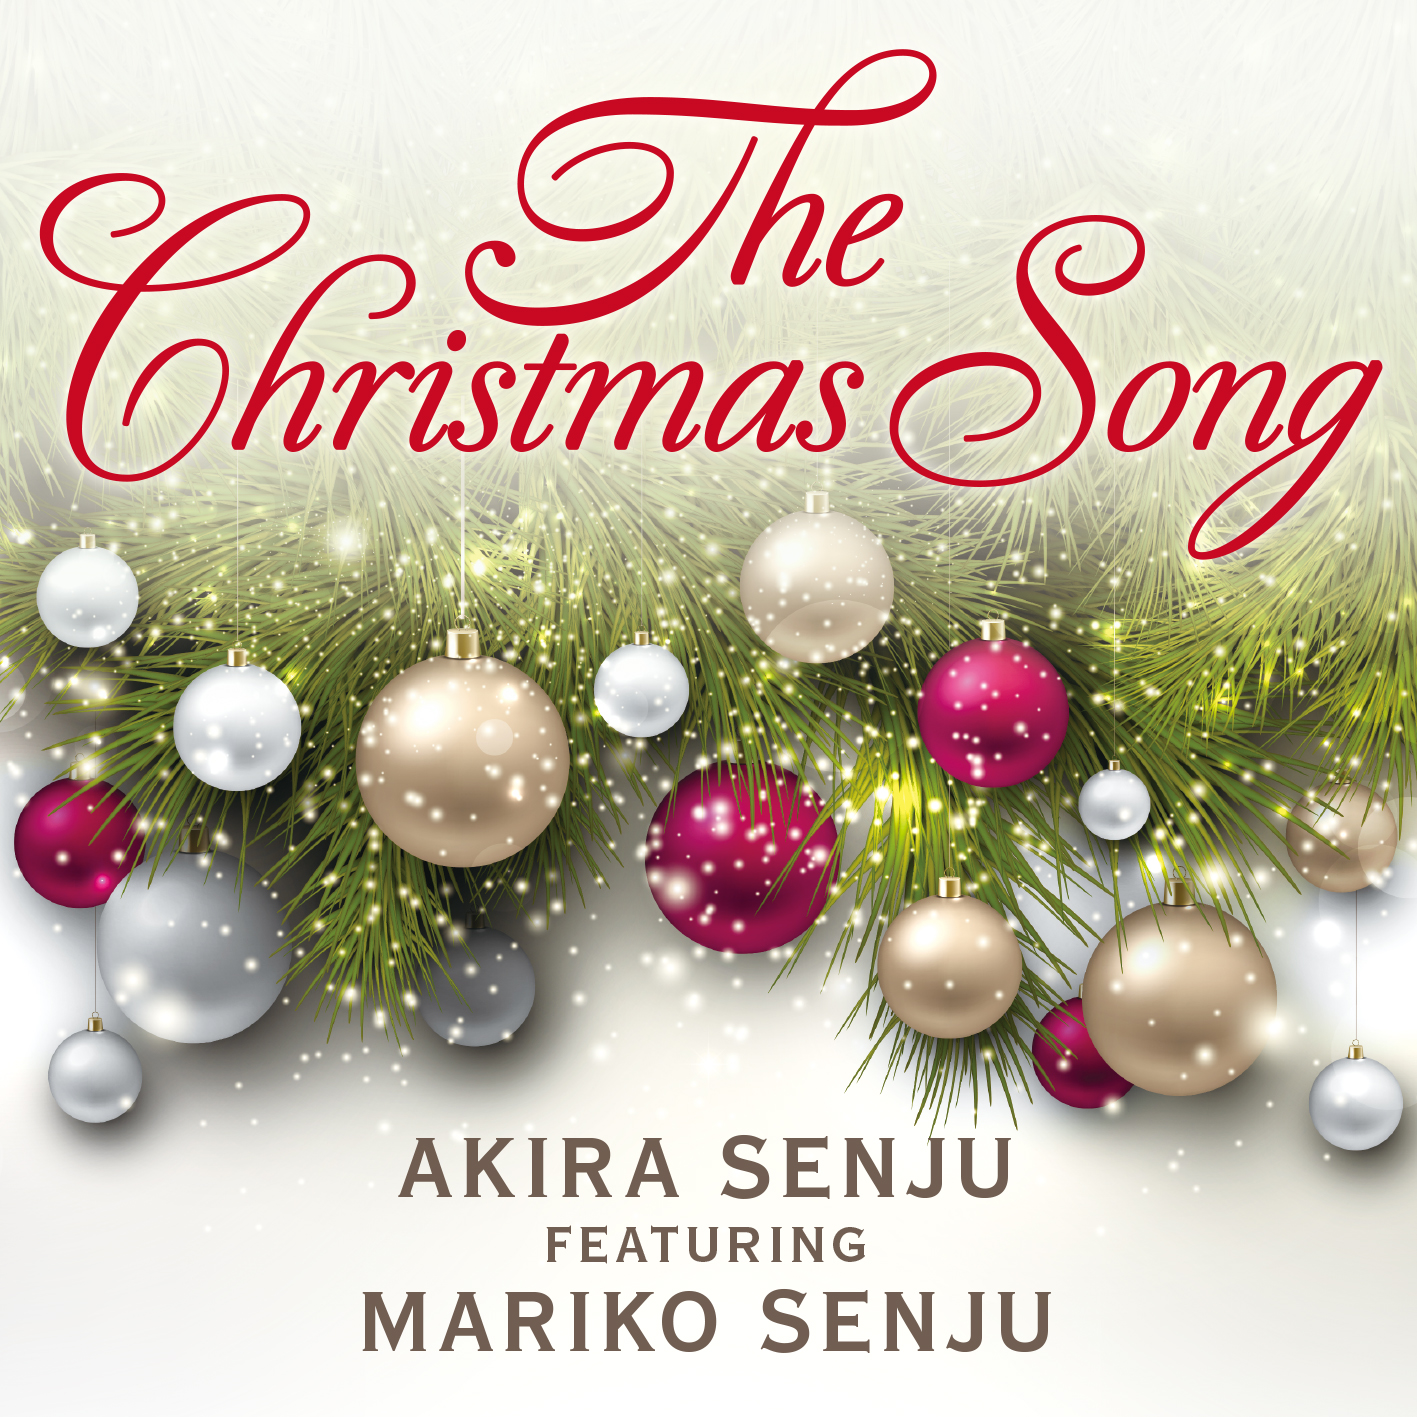 千住明プロデュースシリーズ第1弾「The Christmas Song」